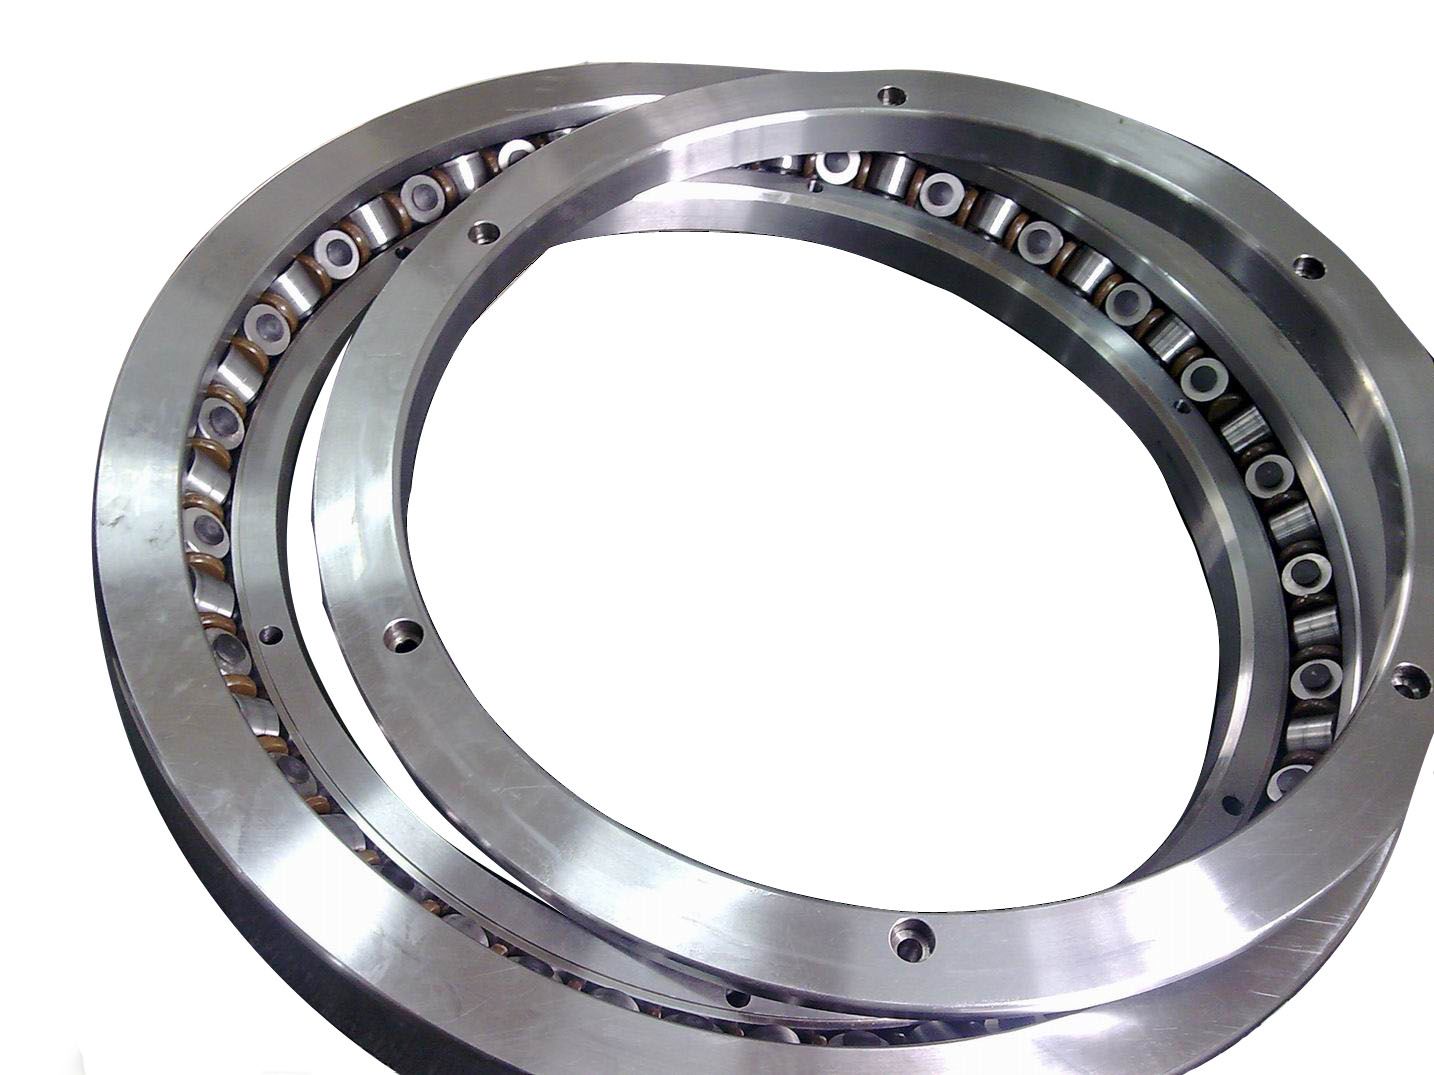 XR903054 cross tapered roller bearing